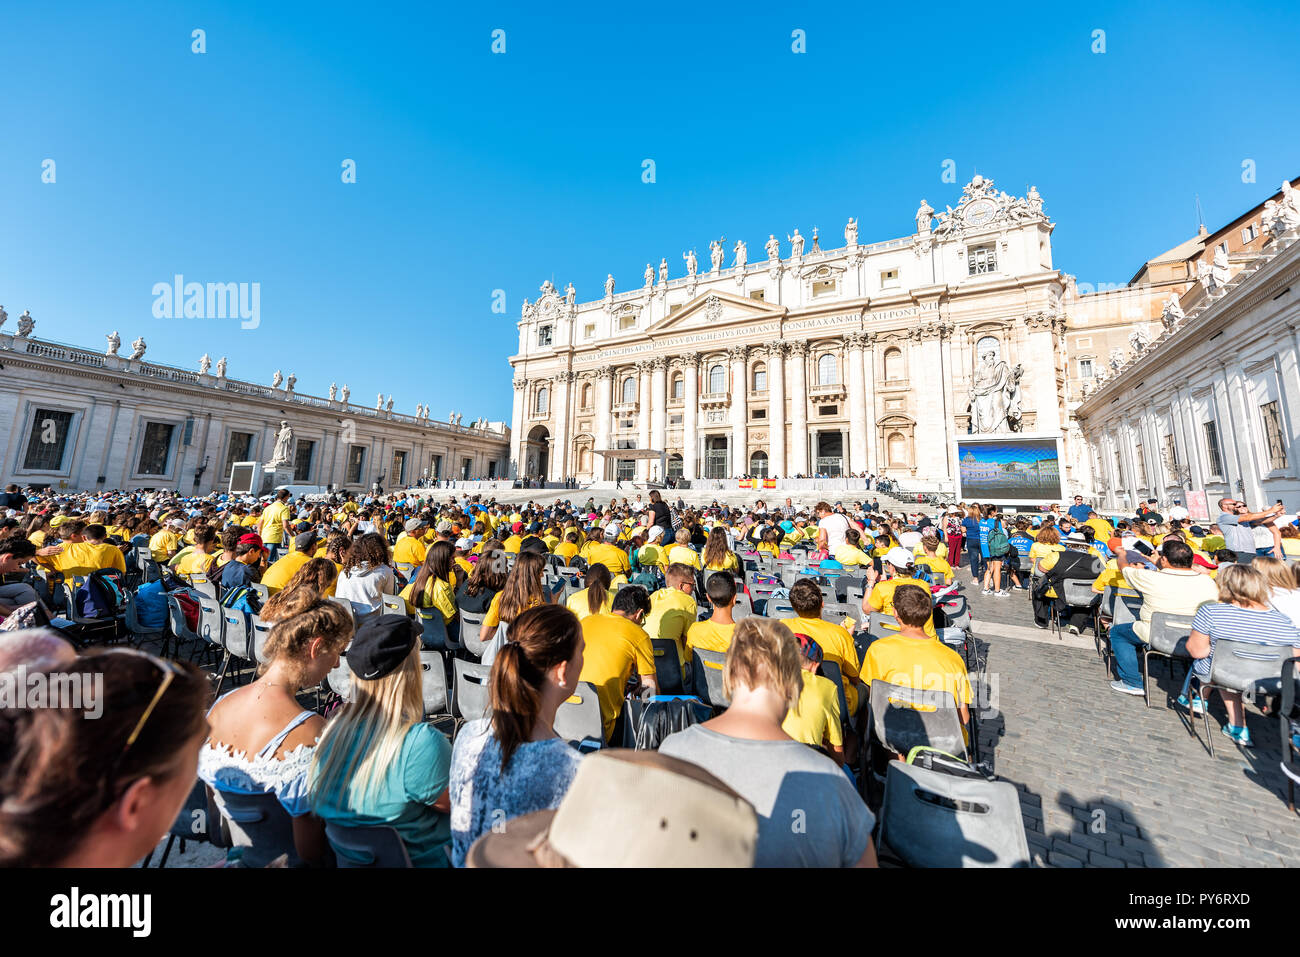 Cité du Vatican, Italie - 5 septembre 2018 : pour l'église de St Peter's Basilica Square pendant la messe, l'audience papale sur sunny day, foule en coopération Banque D'Images